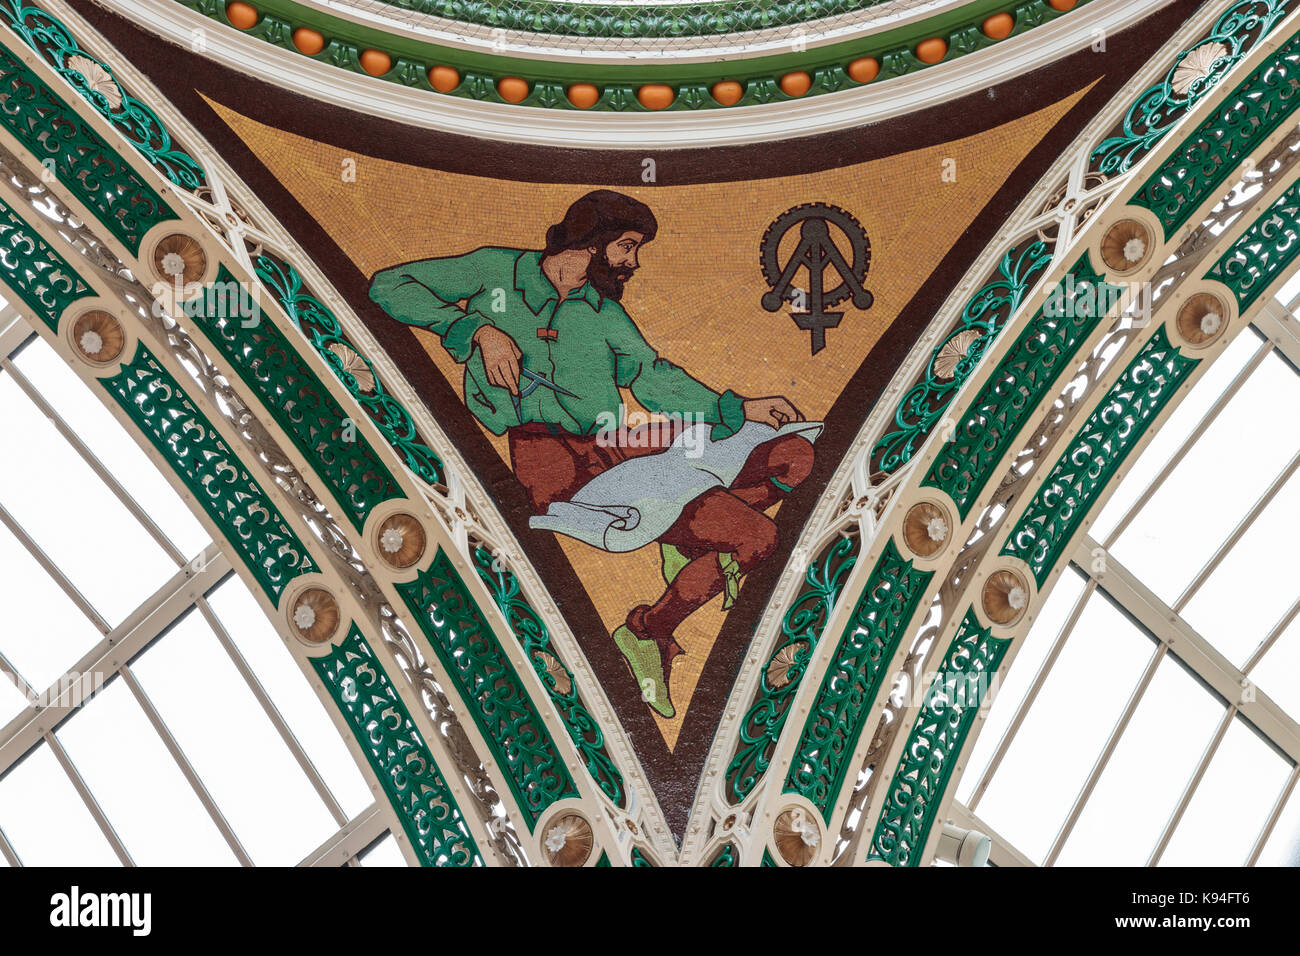 Détail de la mosaïque de plafond, arcade, comté de briggate, Leeds Banque D'Images